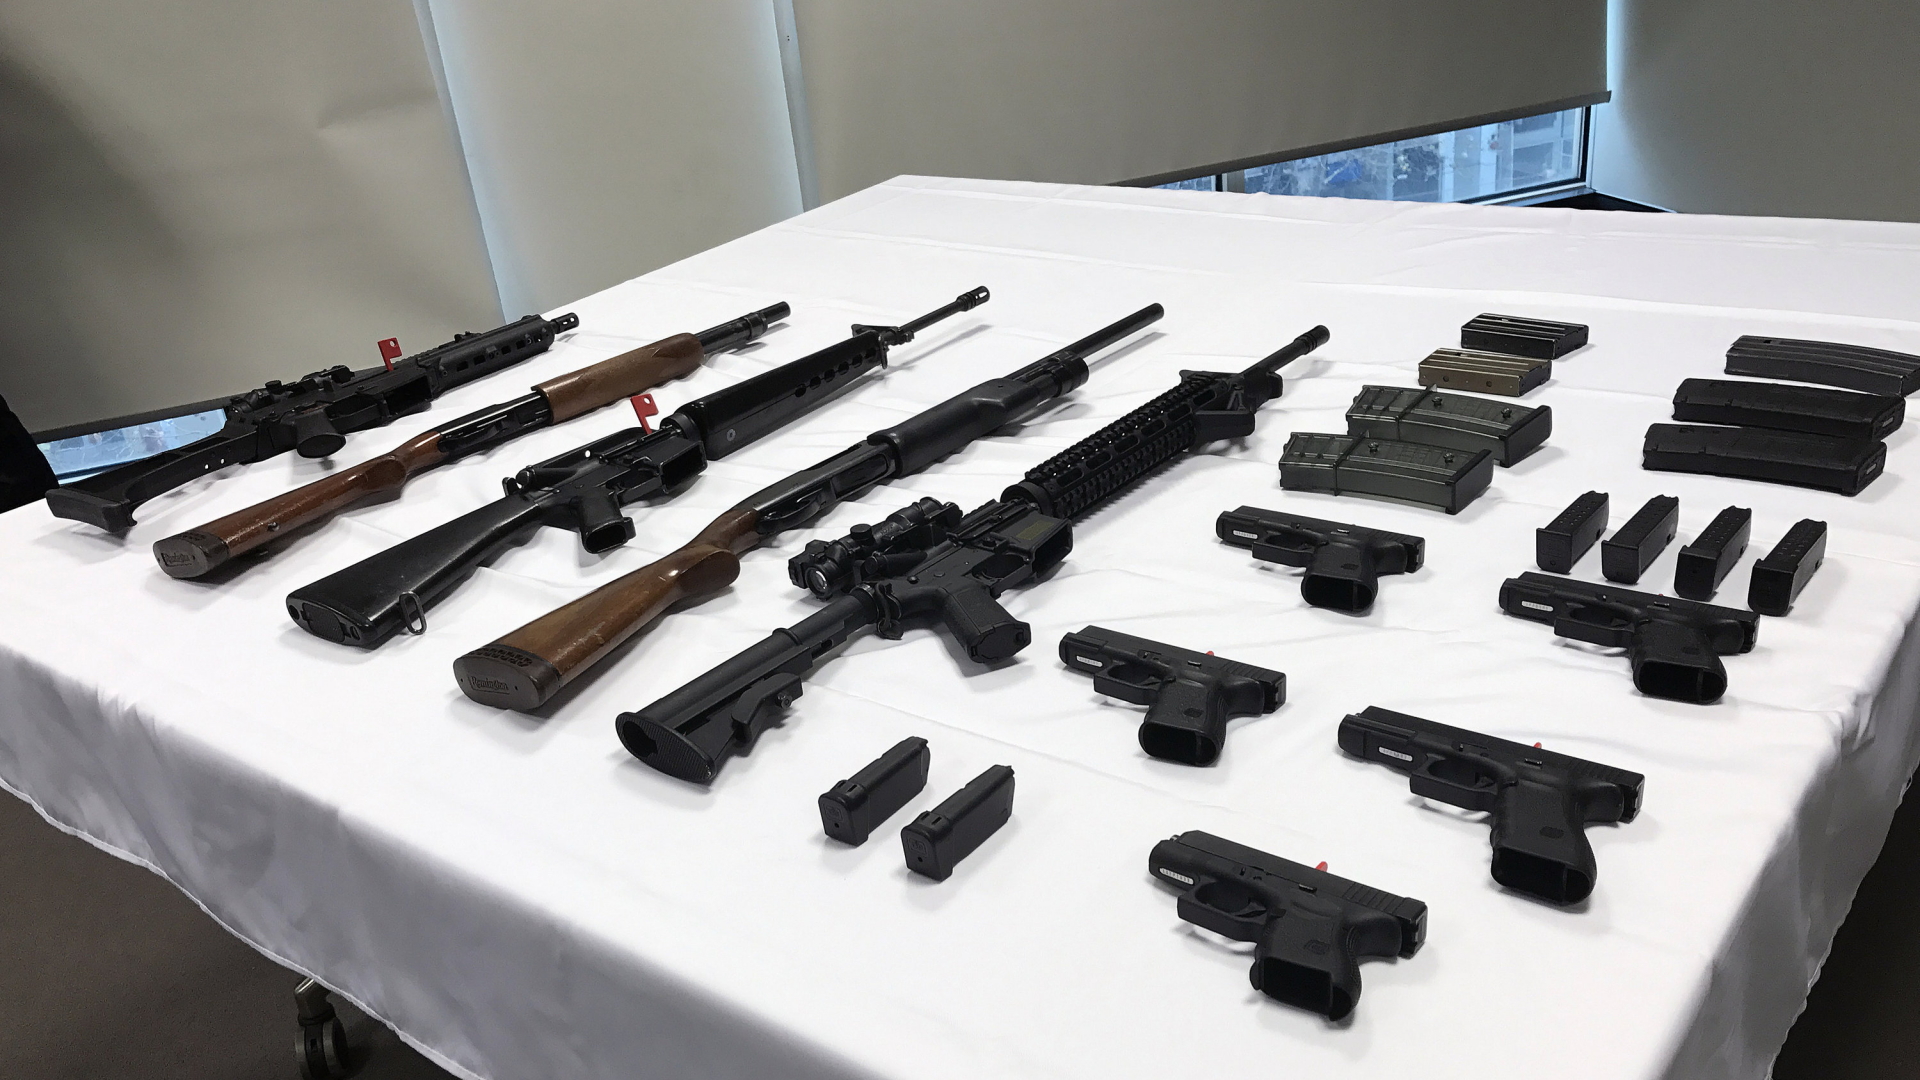 Verschiedene Gehwehre und Pistolen liegen am 16.06.2017 in Canberra (Australien) auf einem Tisch.